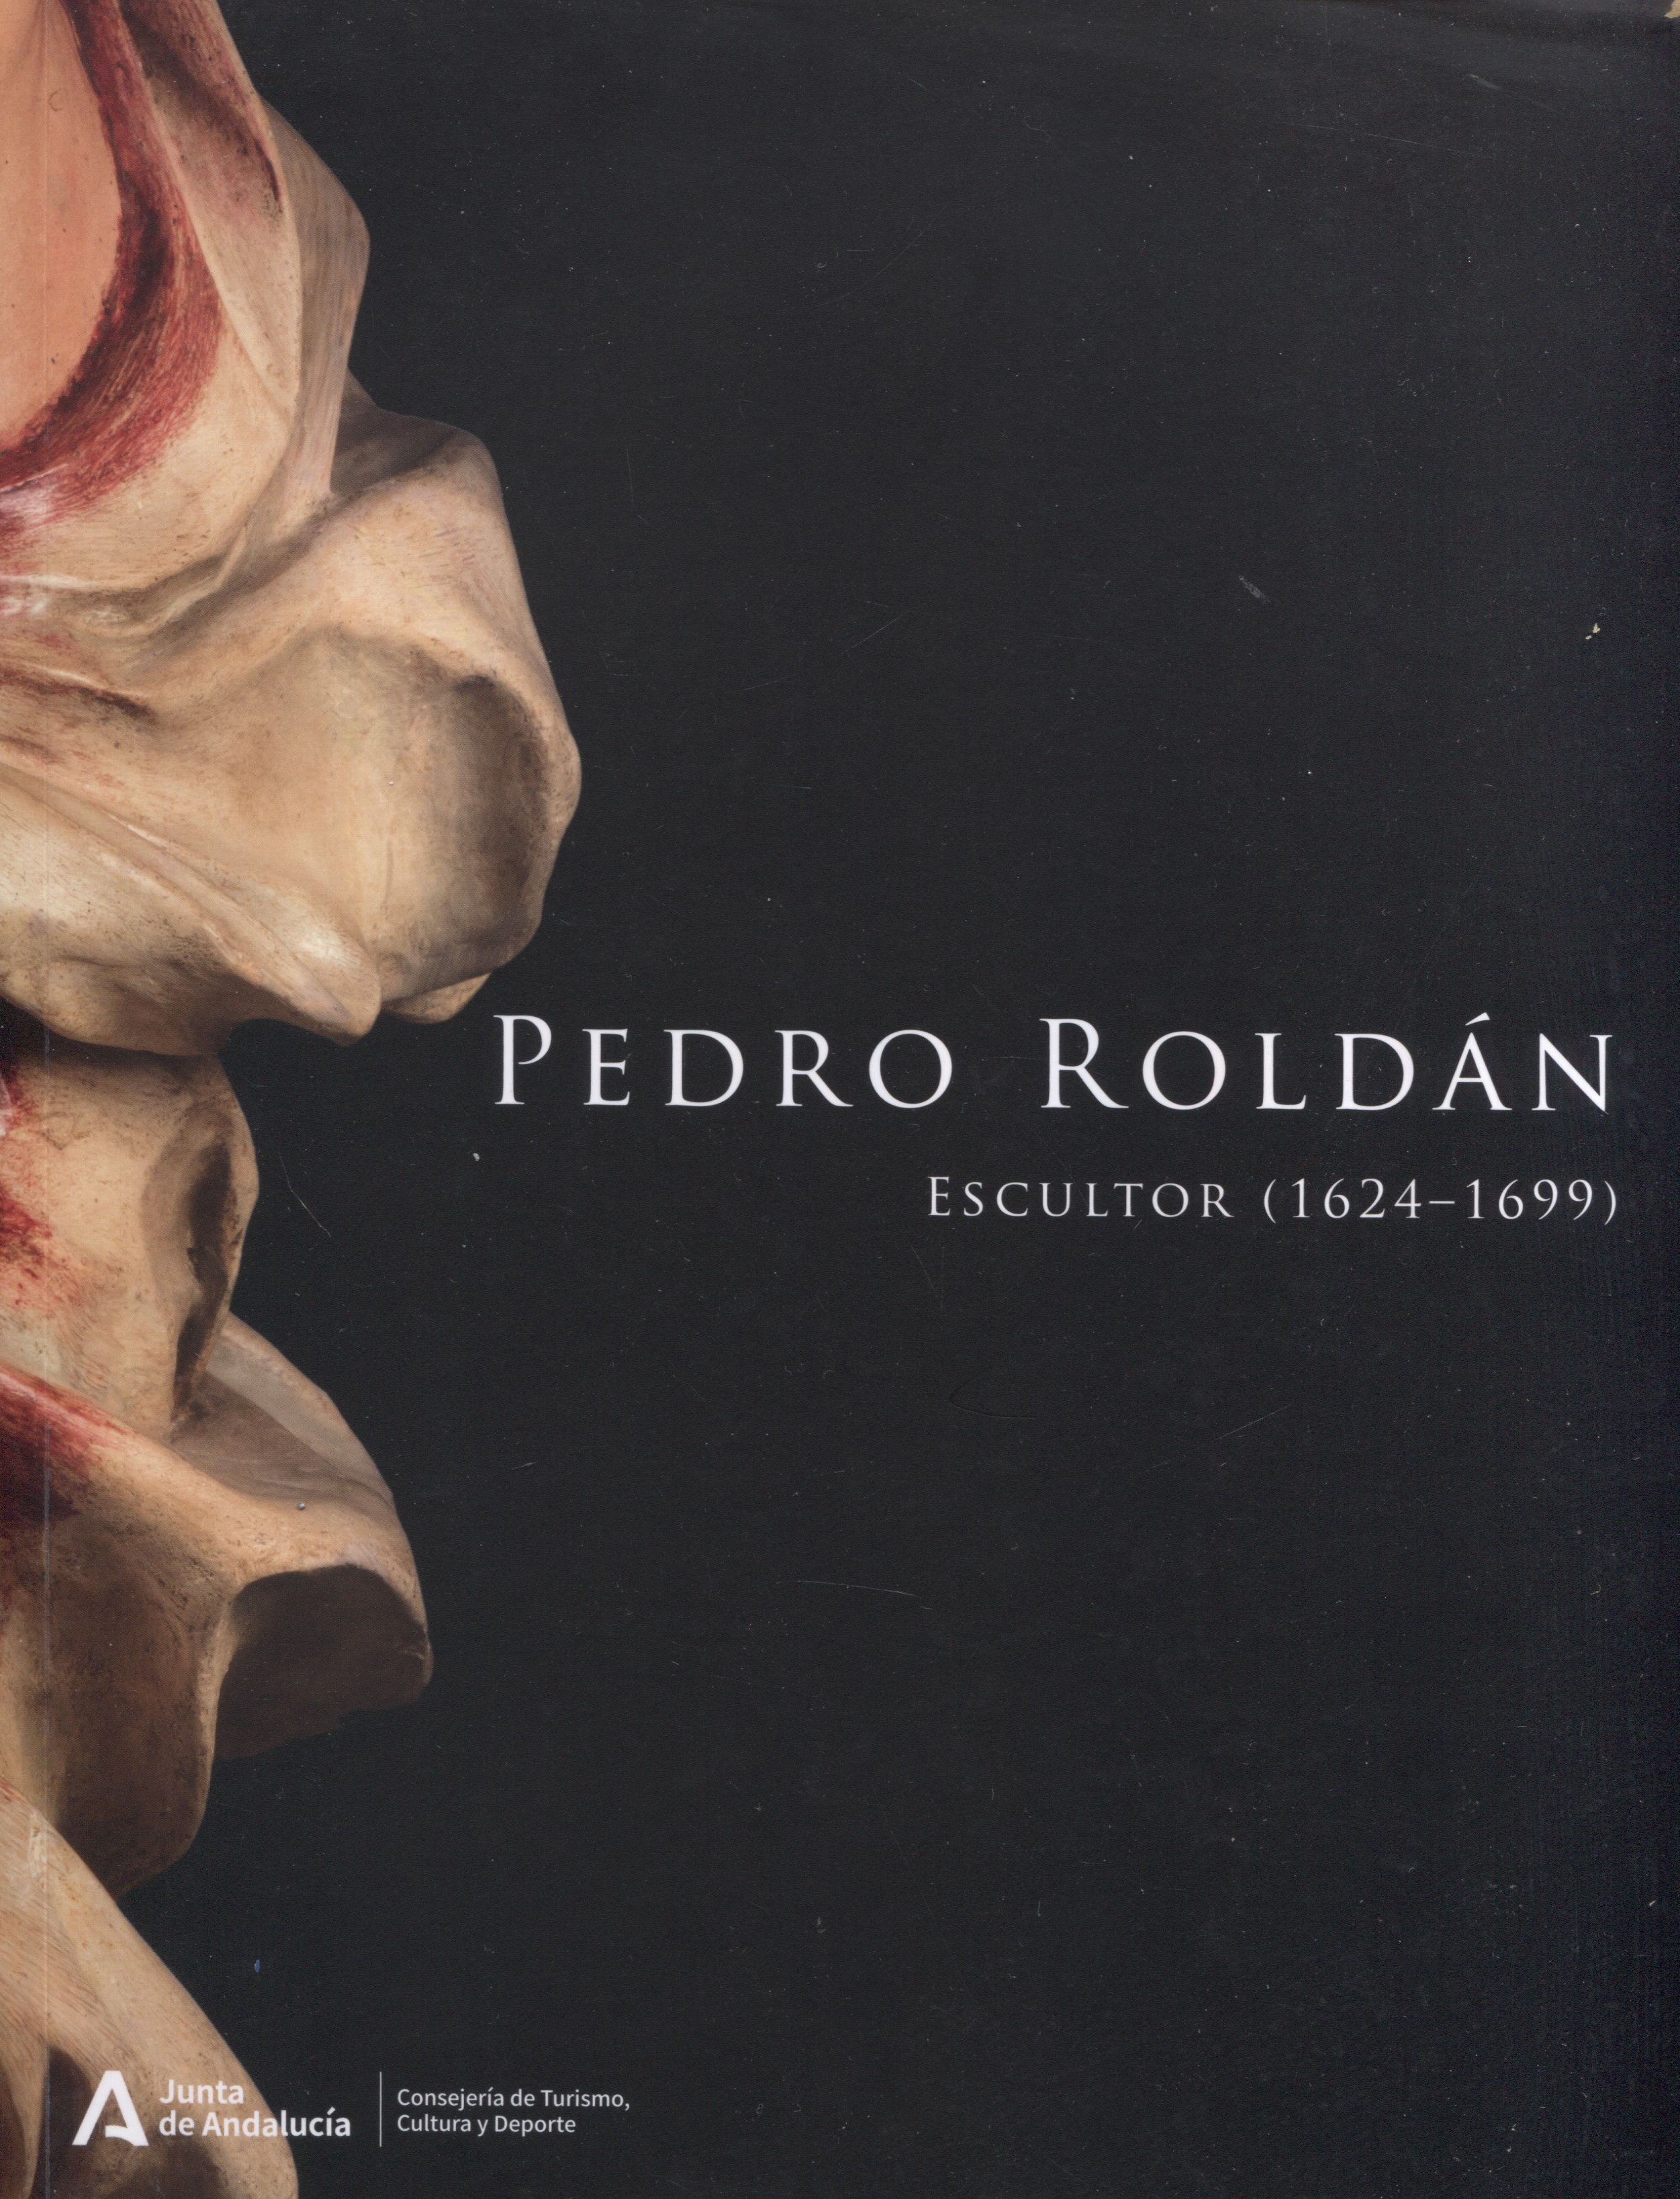 Pedro Roldán